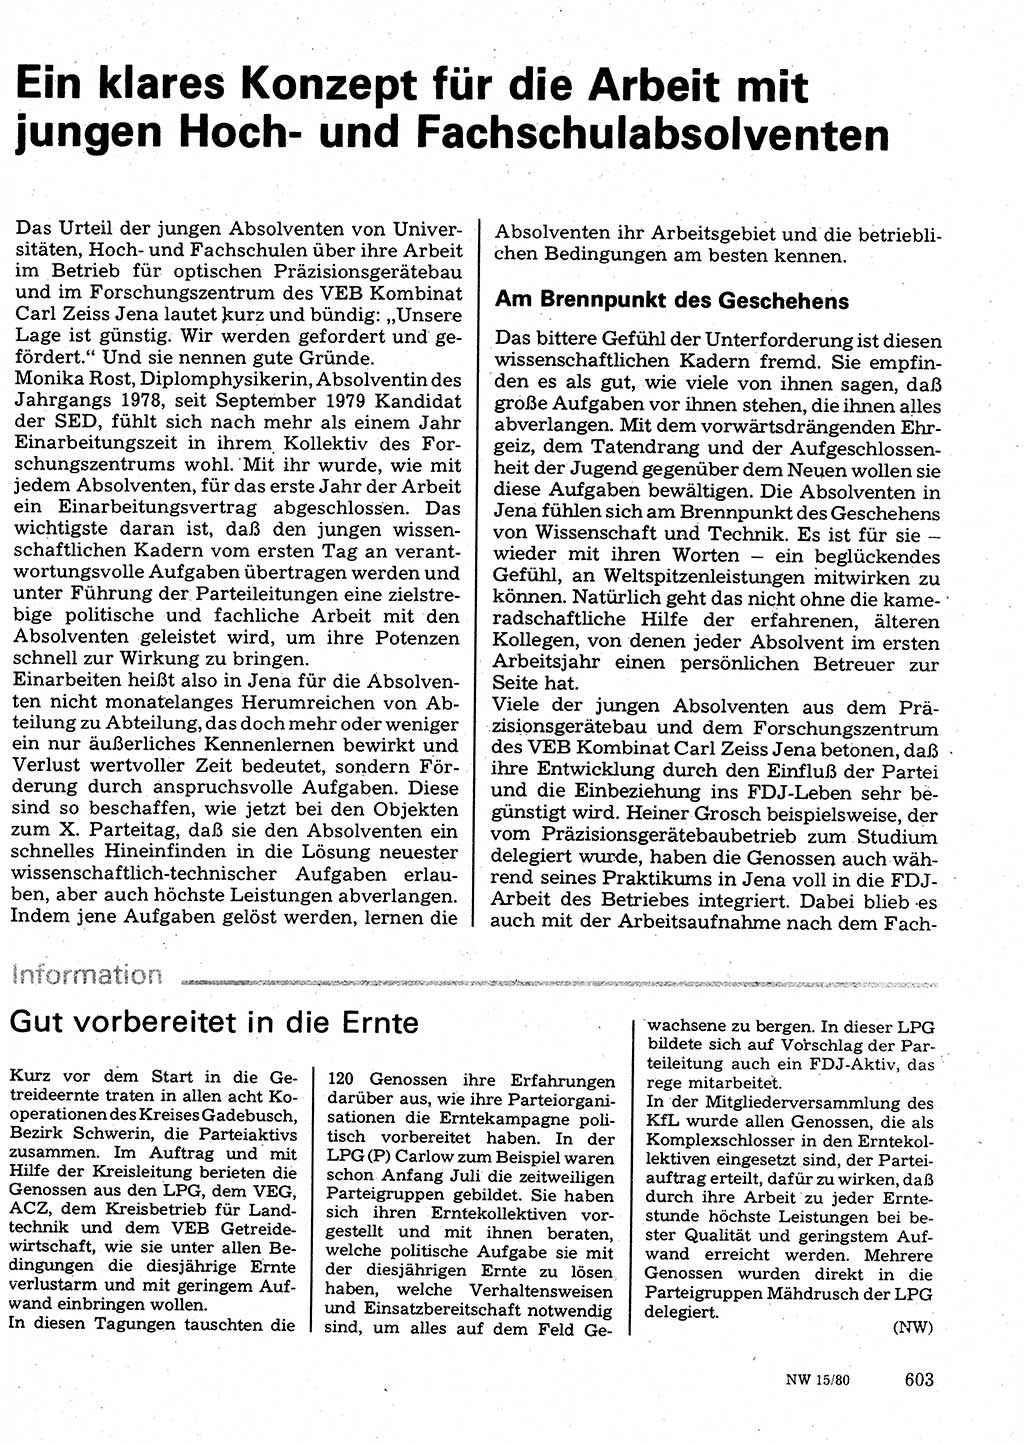 Neuer Weg (NW), Organ des Zentralkomitees (ZK) der SED (Sozialistische Einheitspartei Deutschlands) für Fragen des Parteilebens, 35. Jahrgang [Deutsche Demokratische Republik (DDR)] 1980, Seite 603 (NW ZK SED DDR 1980, S. 603)